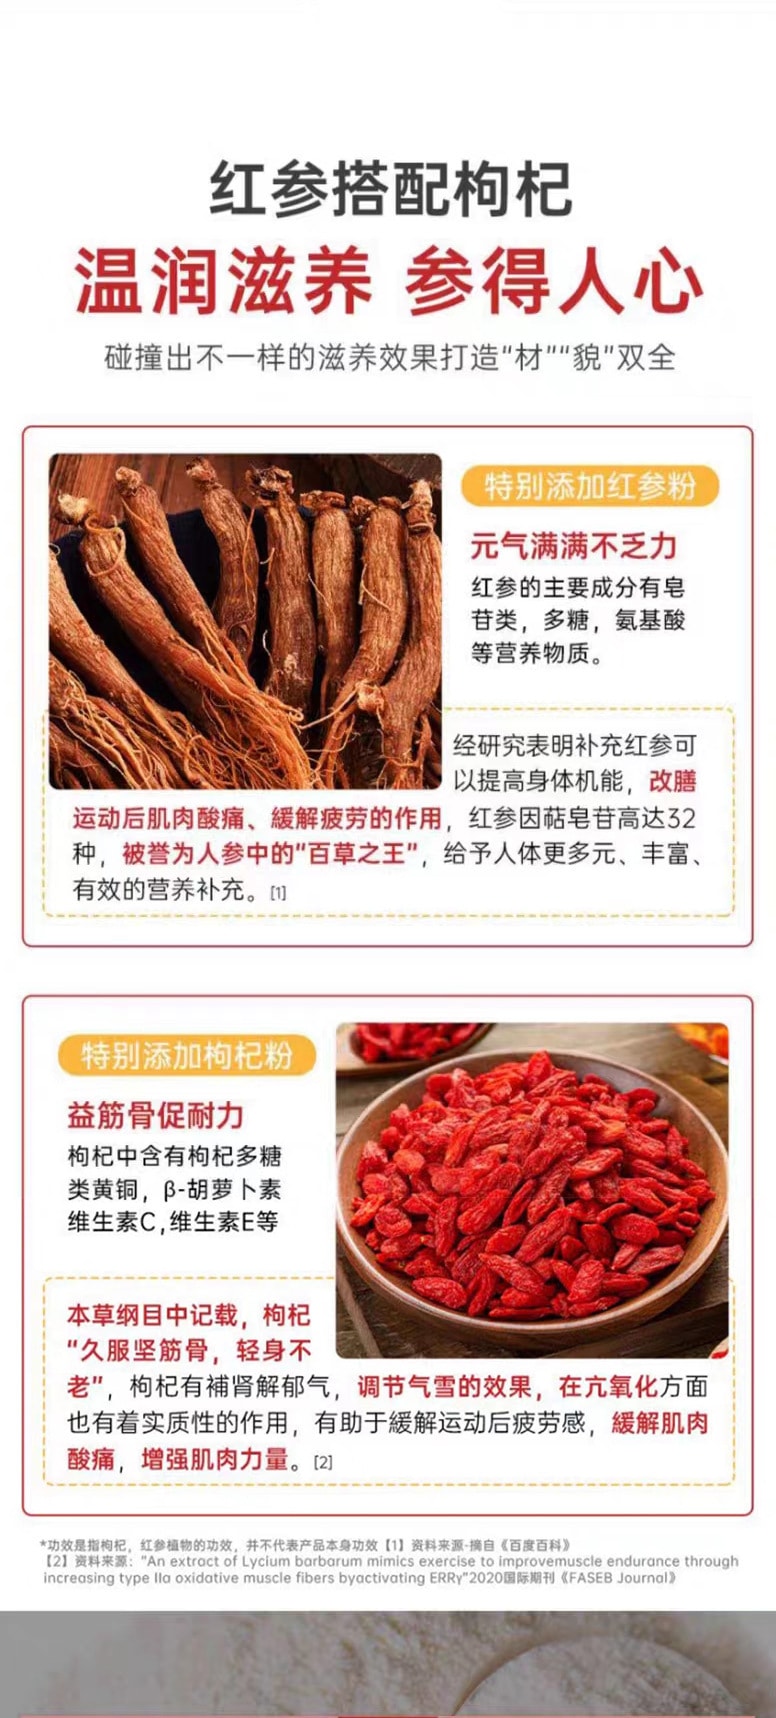 中国 鸿恩本草 红参多维片 32克 (0.8克*40粒) 每片添加红参 16mg 运动营养保健食品 促